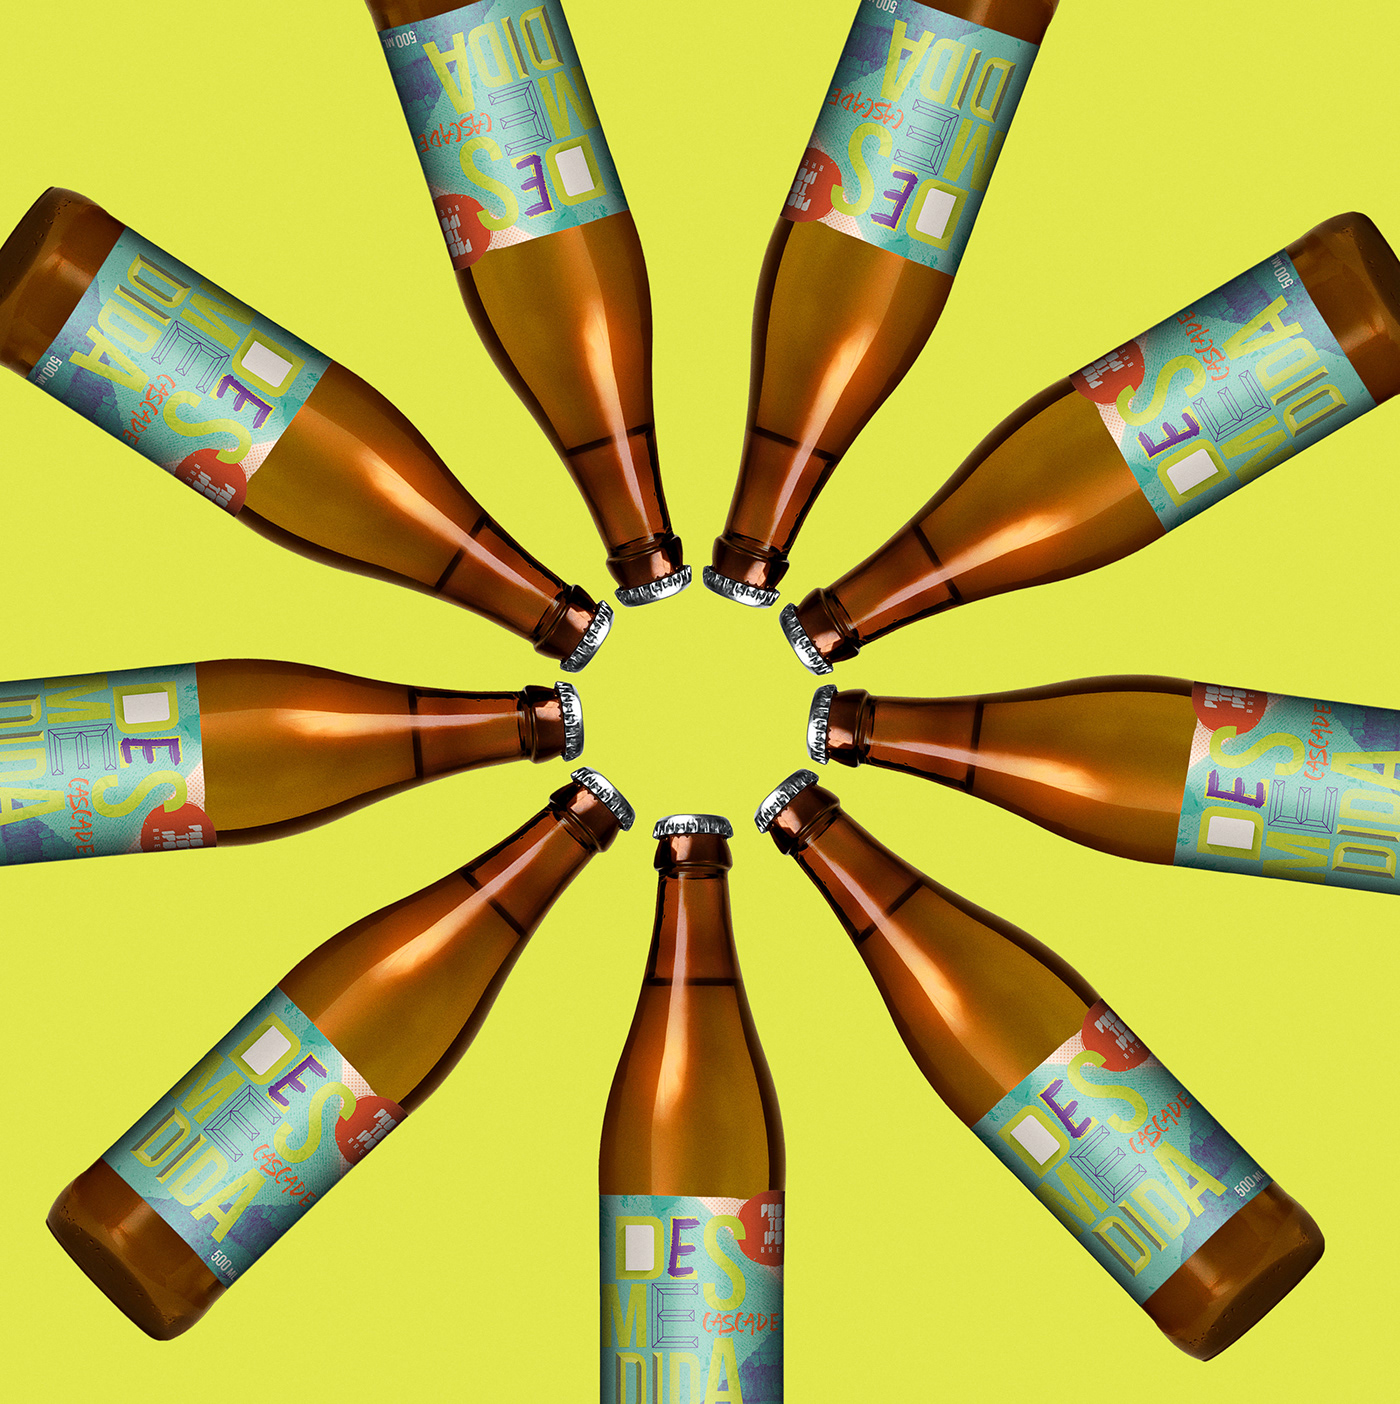 bier label rótulo color brand bier logo bier prototipo desmedida design Urban